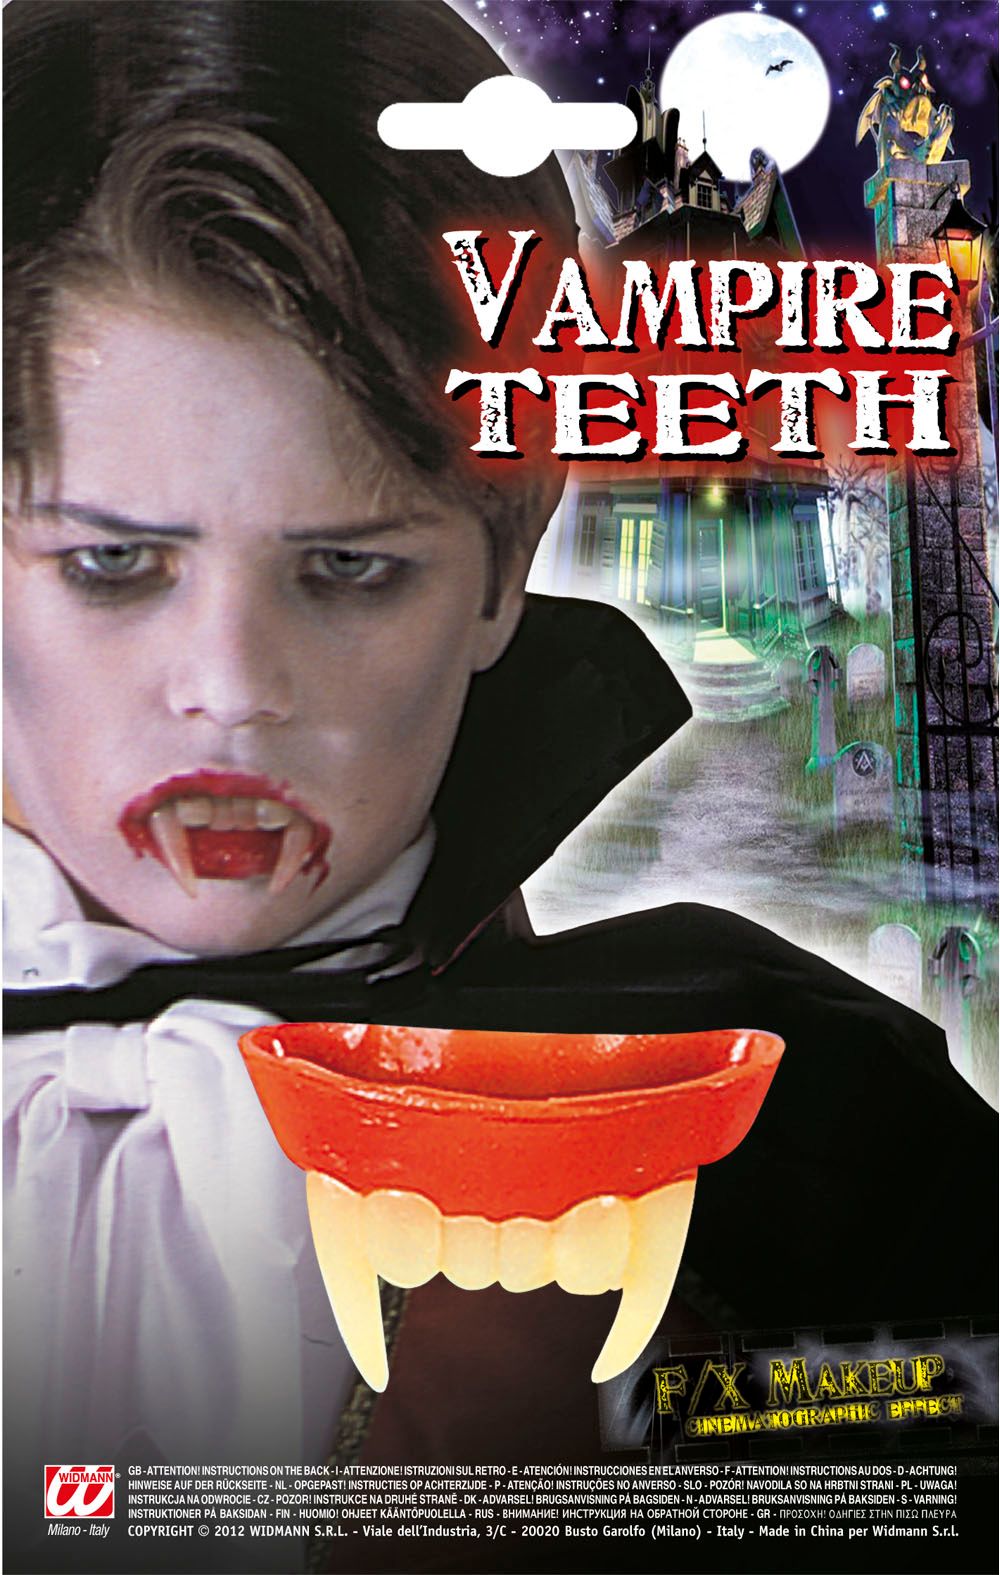 Vampier gebit kind